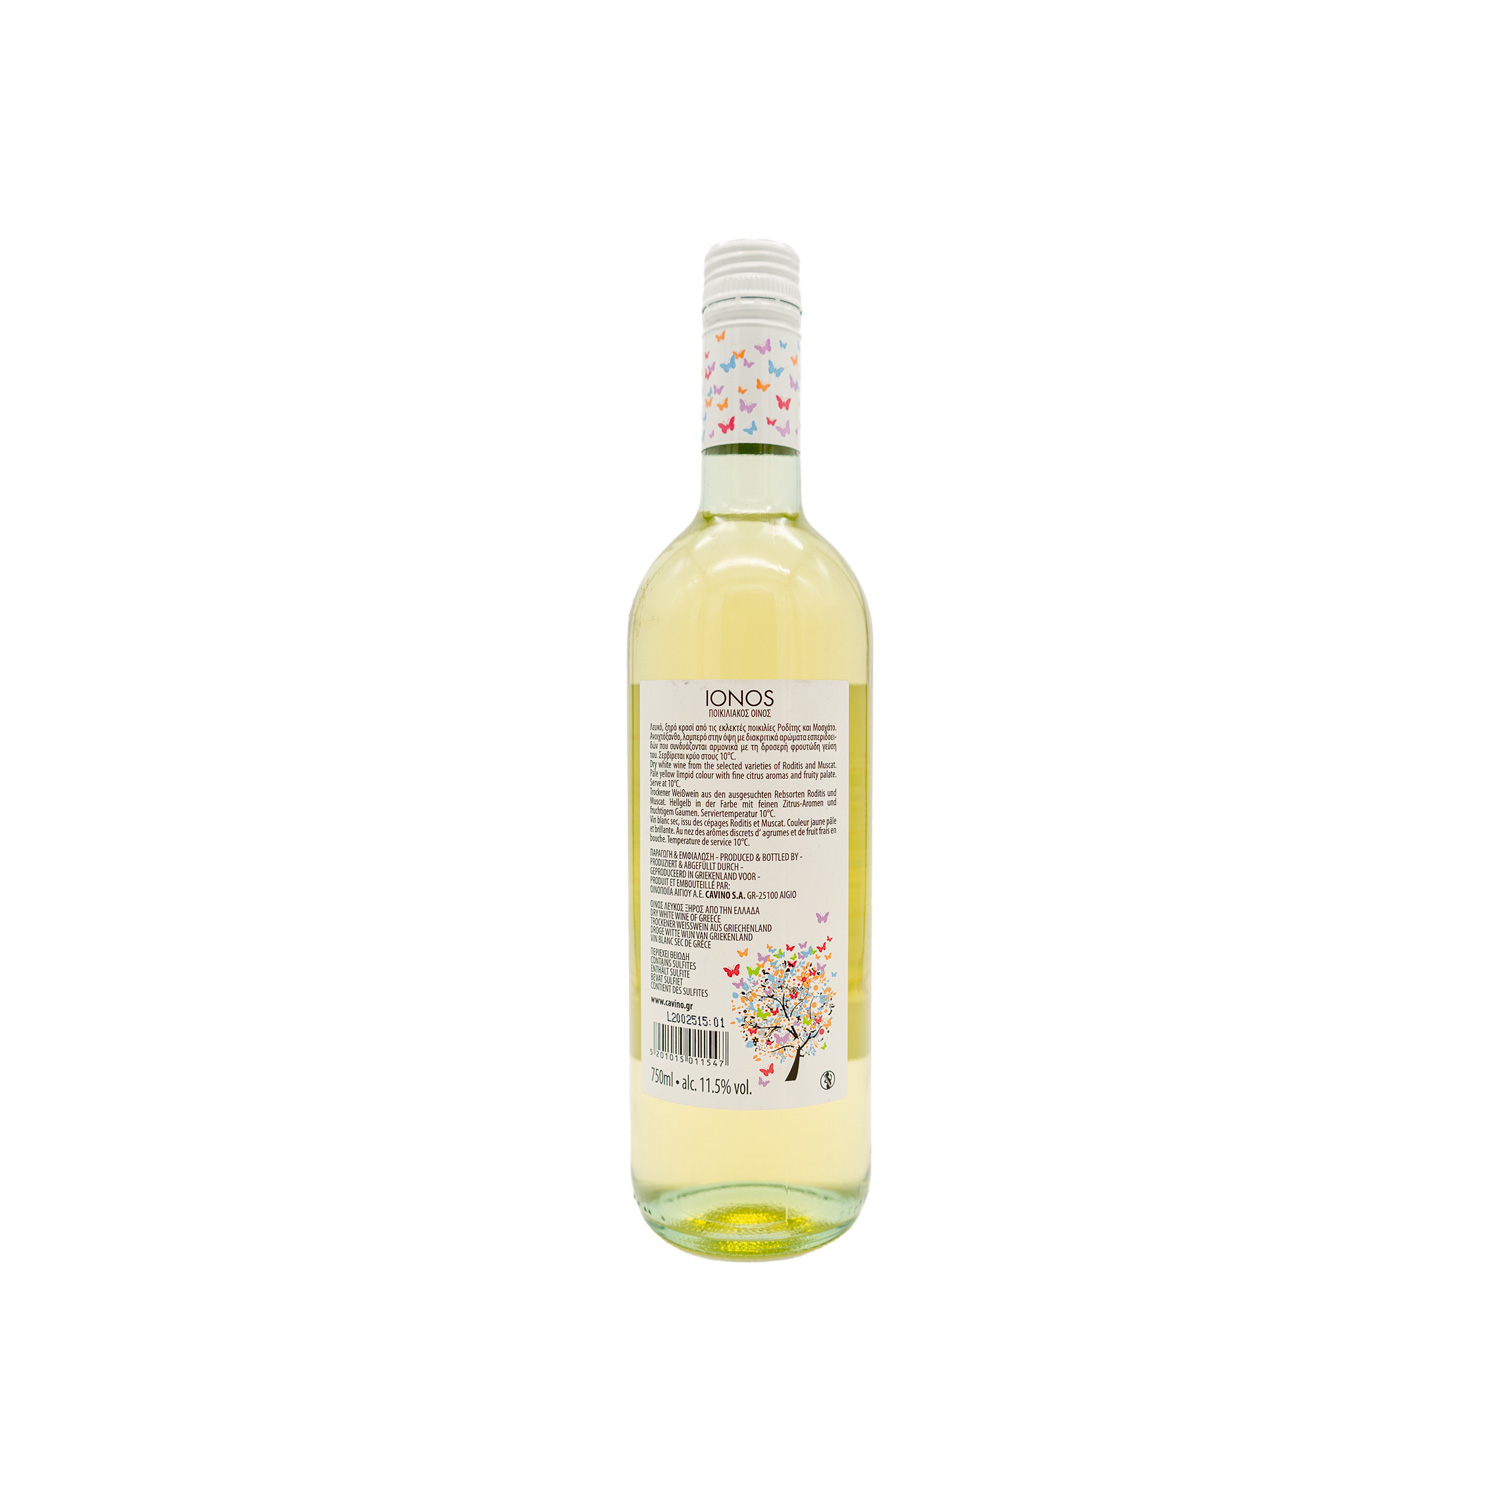 IONOS griechischer Weißwein Moscato 750ml Alleskreta vol 11.5% 